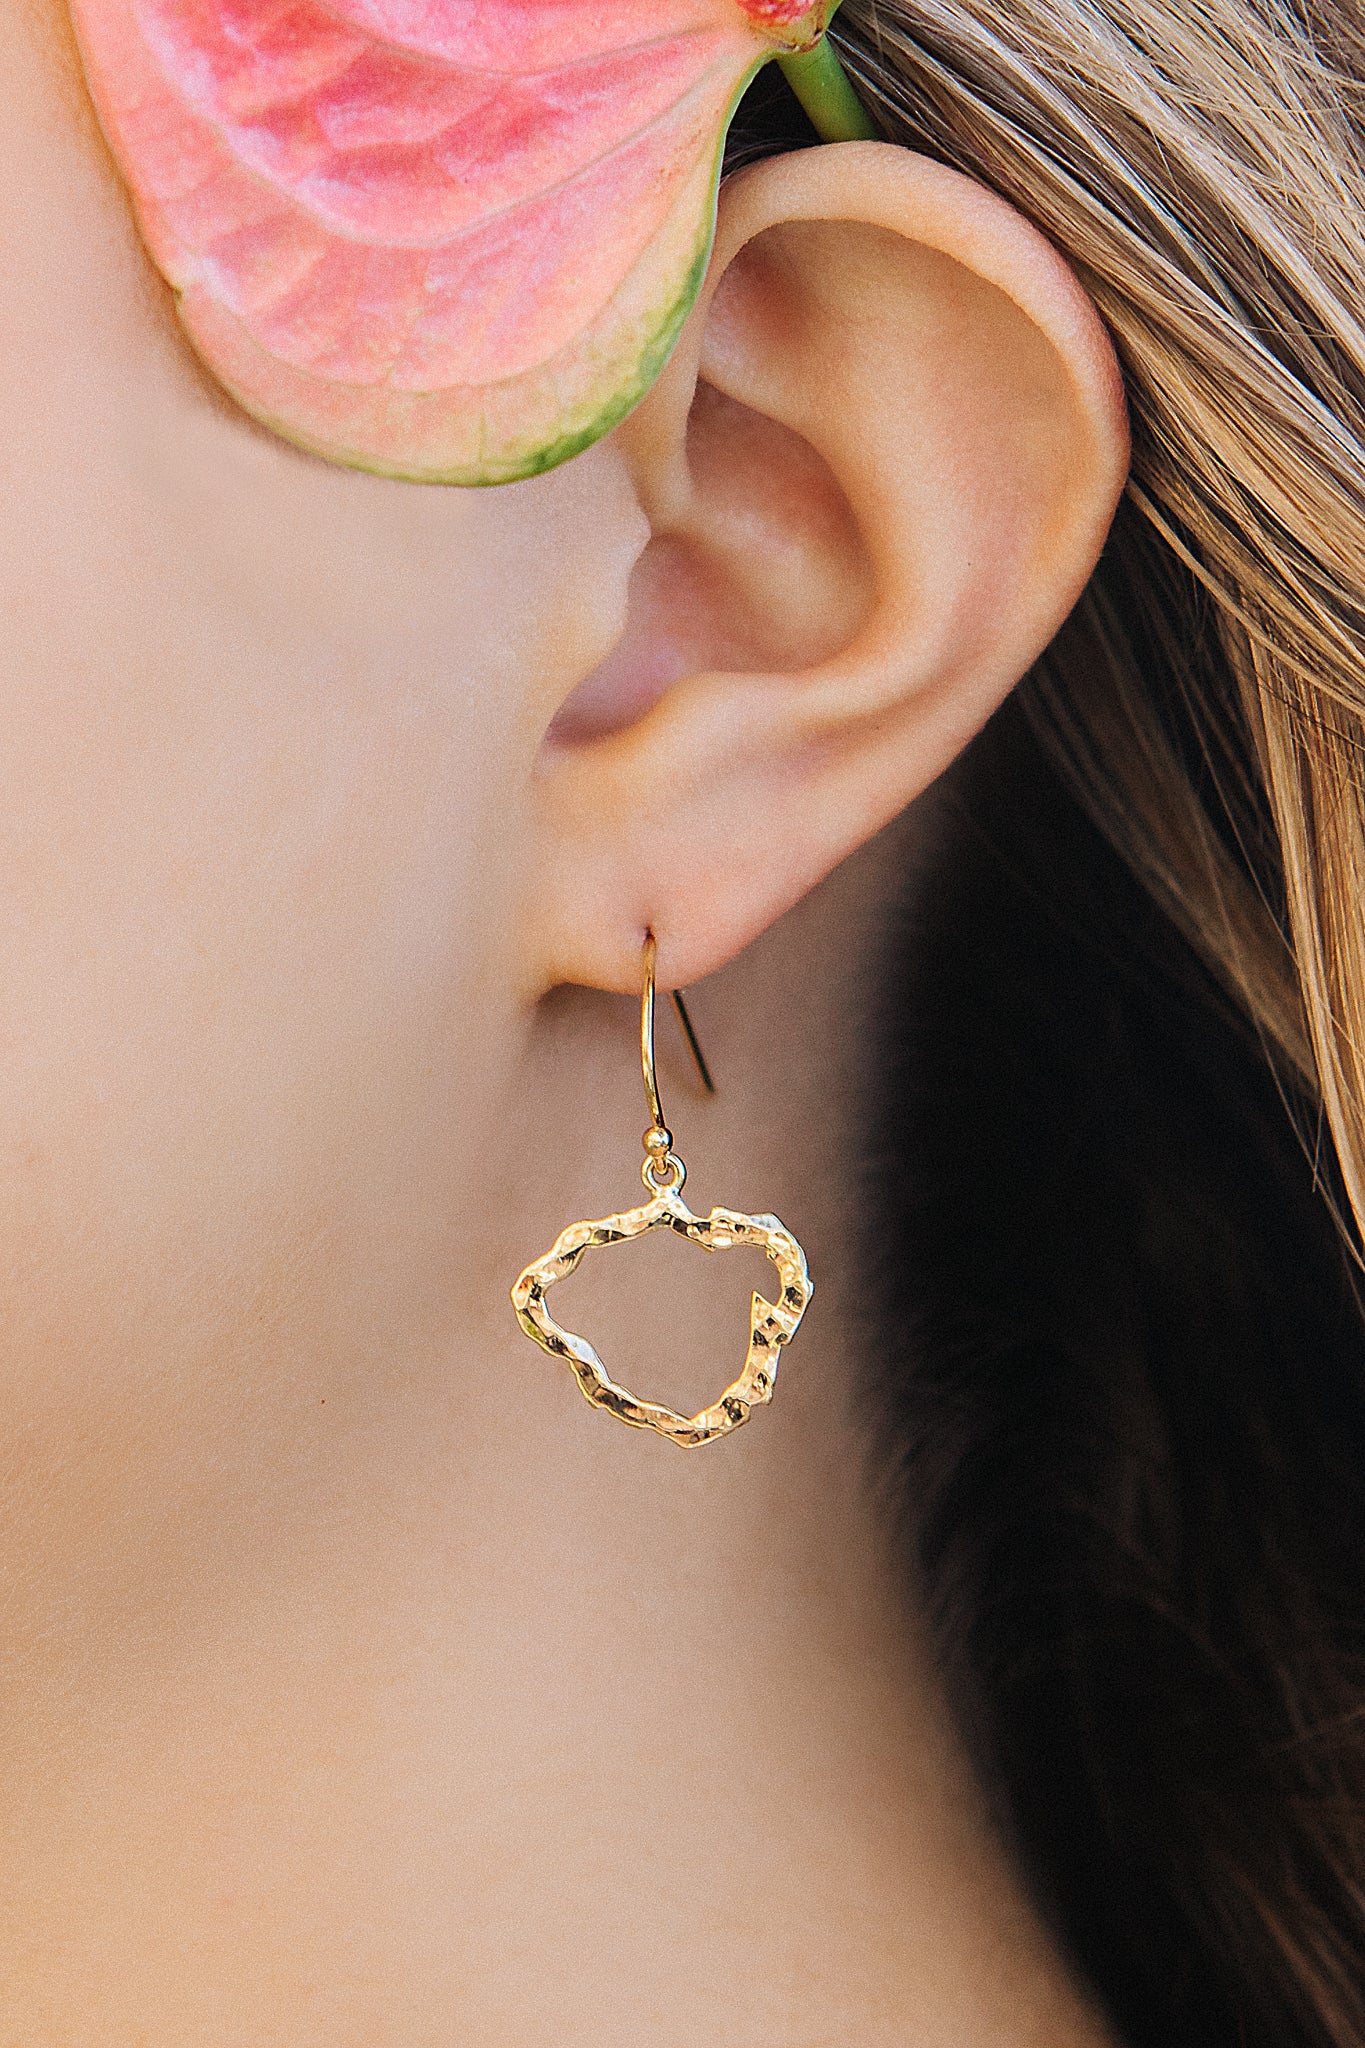 Kauai Petite Silhouette drop earrings